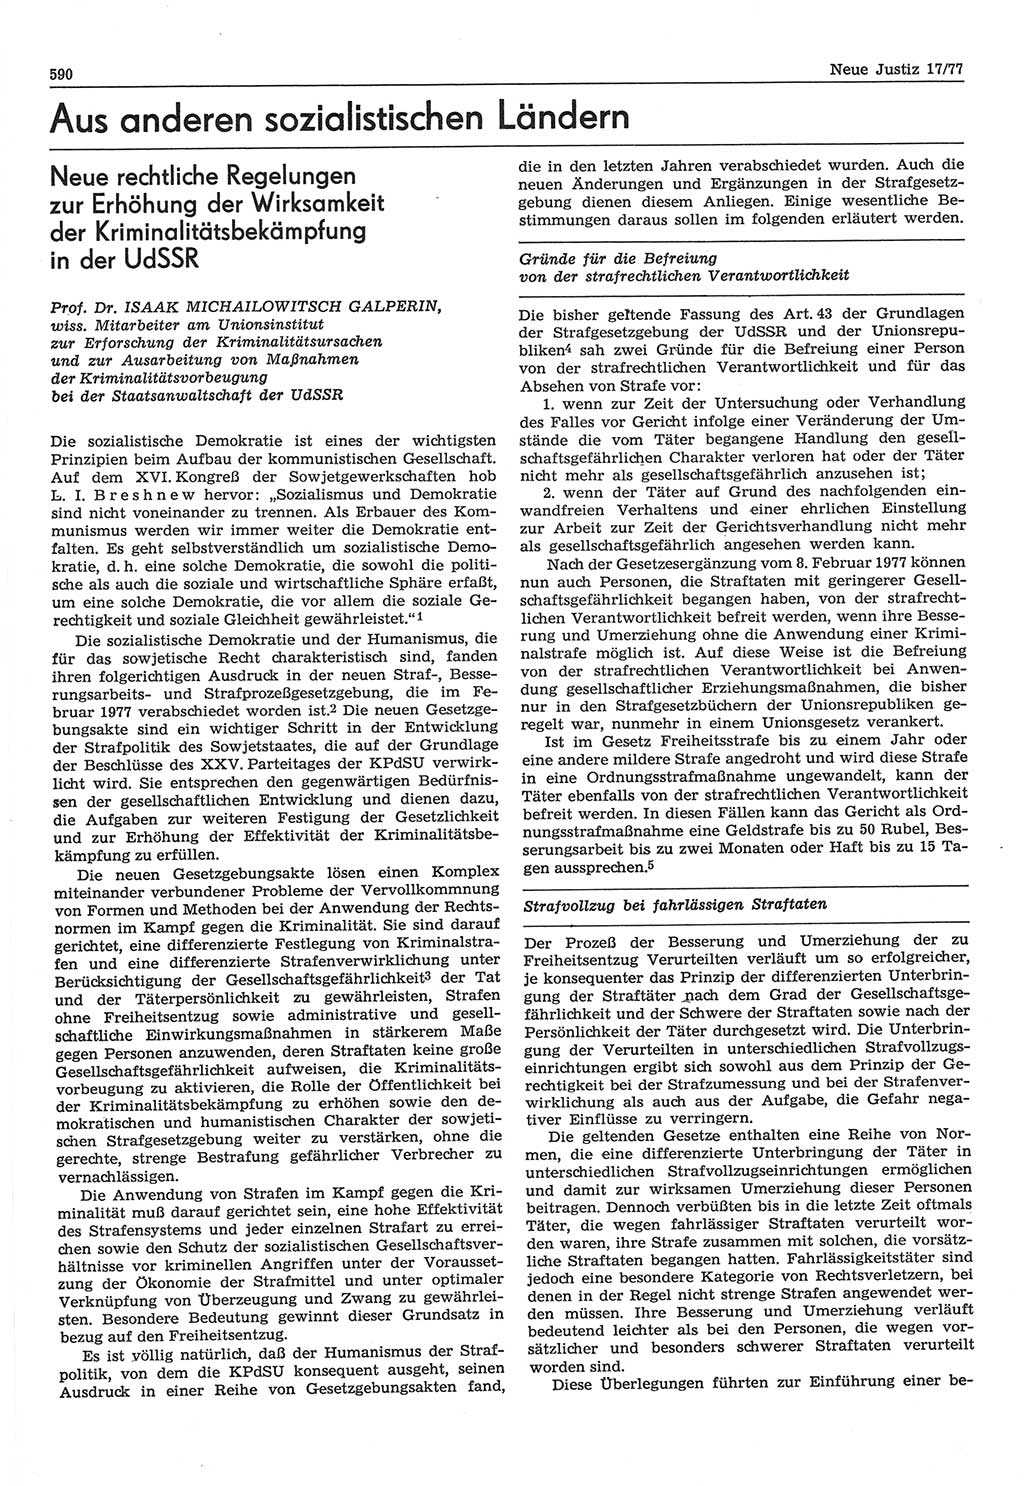 Neue Justiz (NJ), Zeitschrift für Recht und Rechtswissenschaft-Zeitschrift, sozialistisches Recht und Gesetzlichkeit, 31. Jahrgang 1977, Seite 590 (NJ DDR 1977, S. 590)